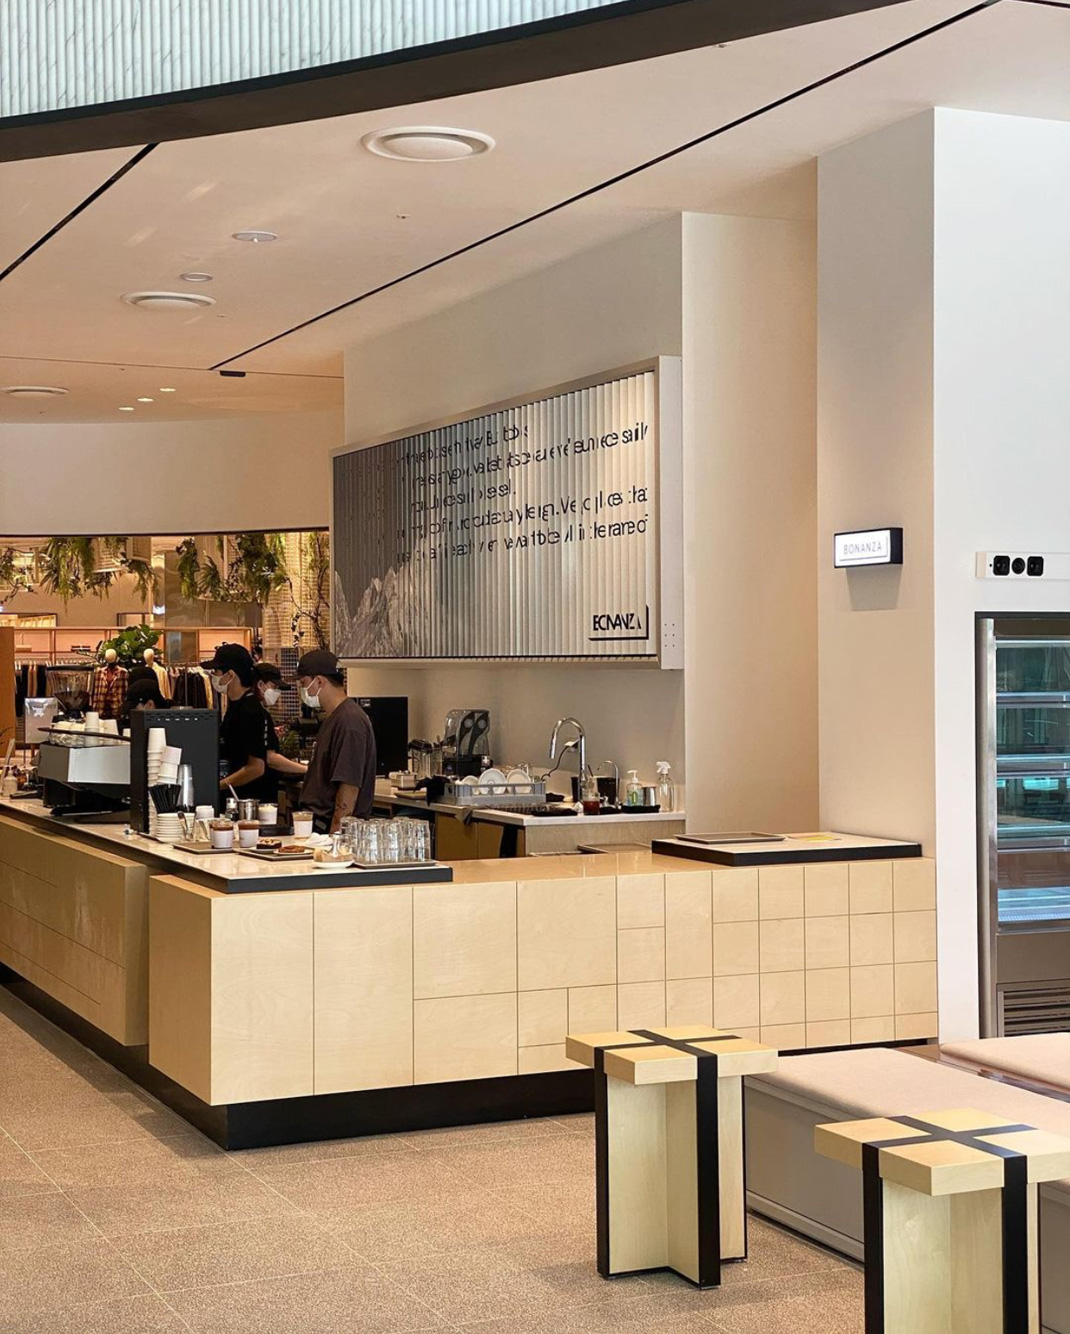 咖啡店mlt cafe & bakery 韩国 咖啡店 弧形 水磨石 不锈钢 logo设计 vi设计 空间设计